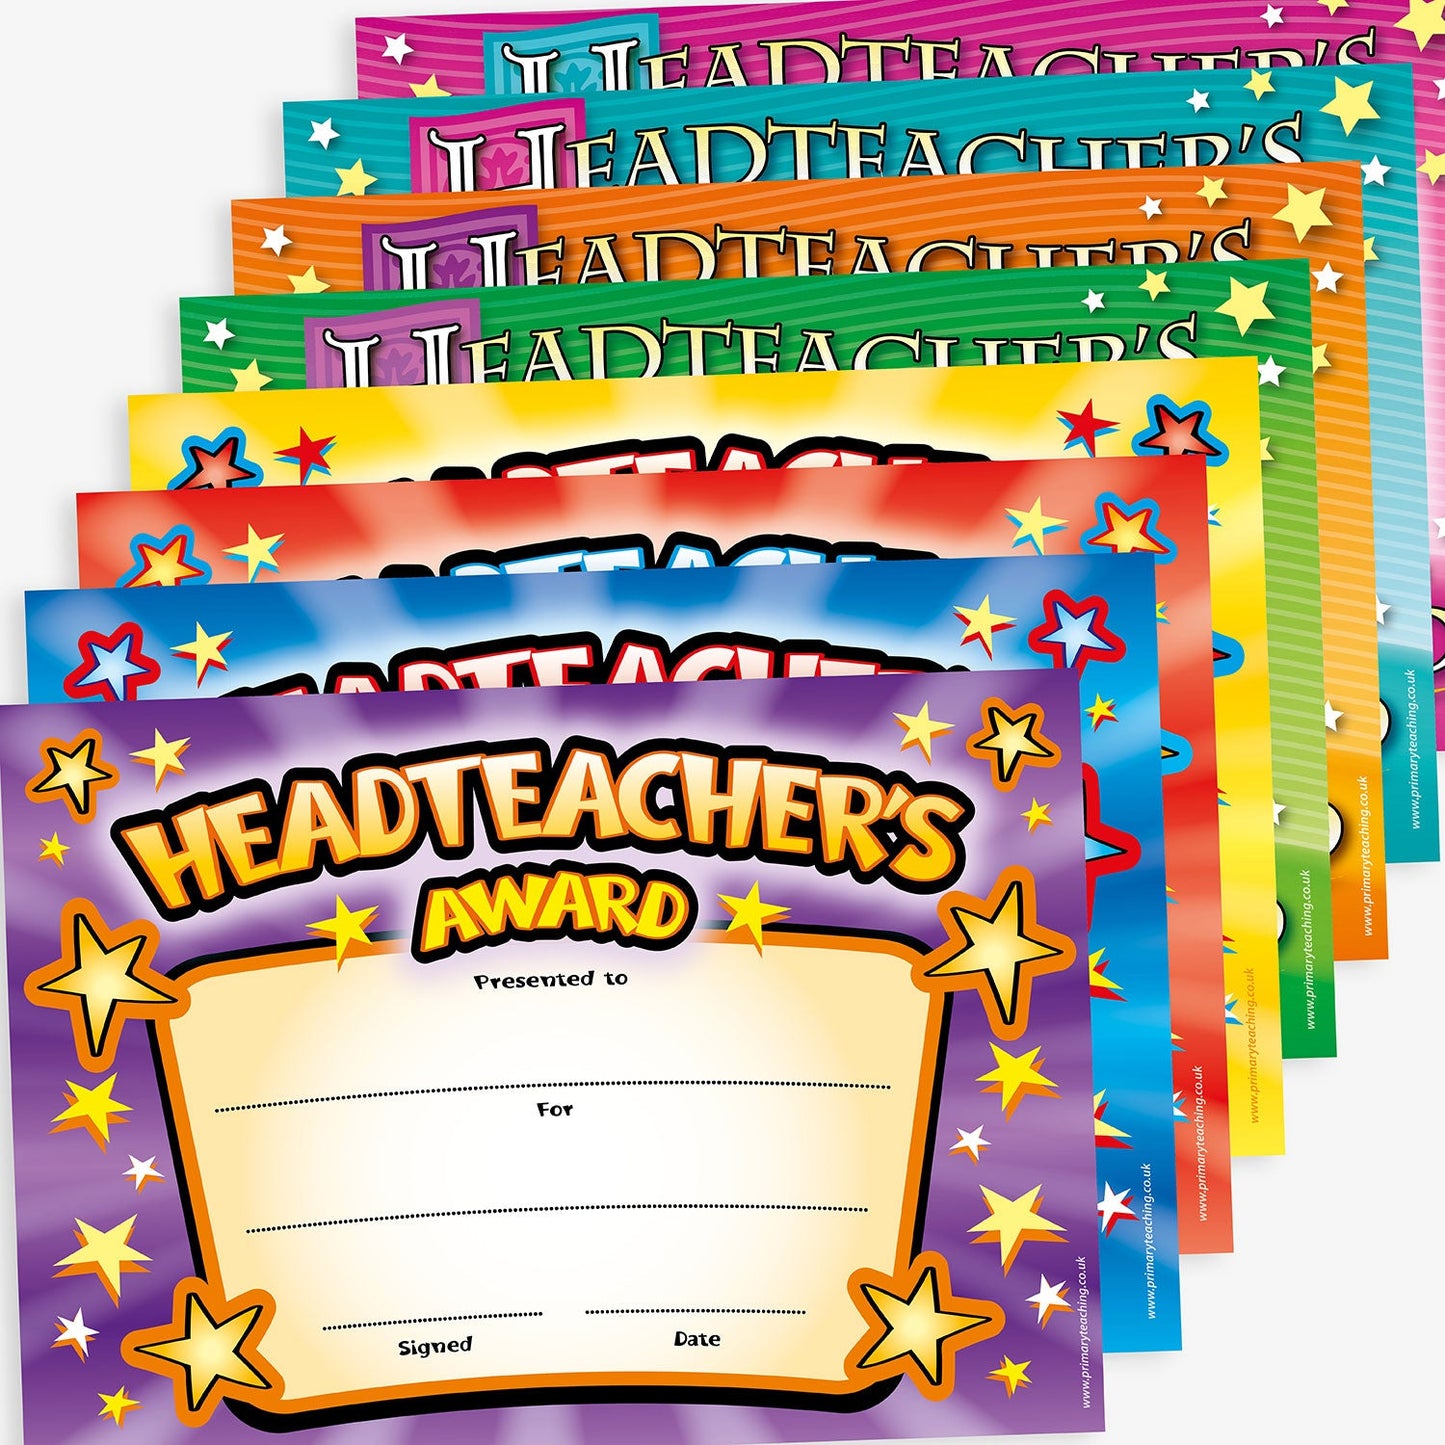 160 Headteacher's Award Certificates - A5